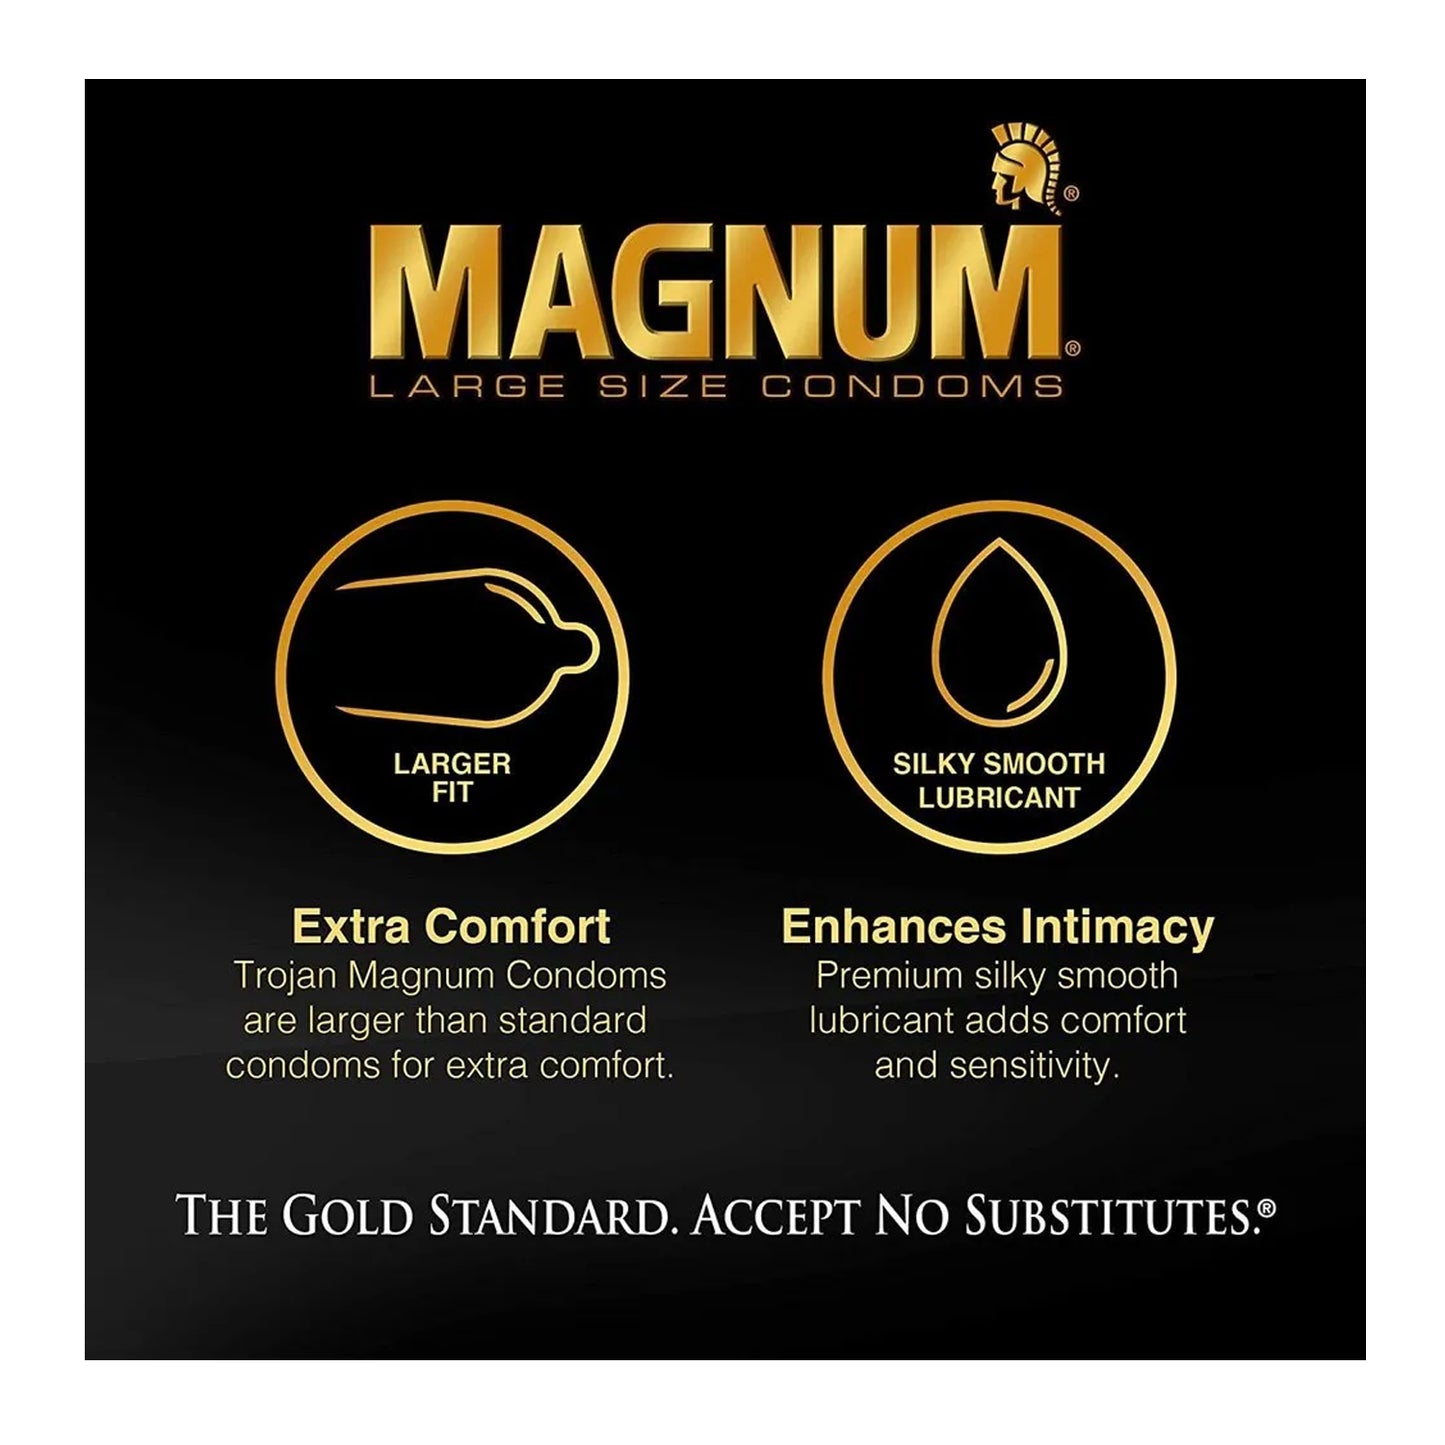 Trojan Magnum Bareskin Large Latex Condoms 3pack